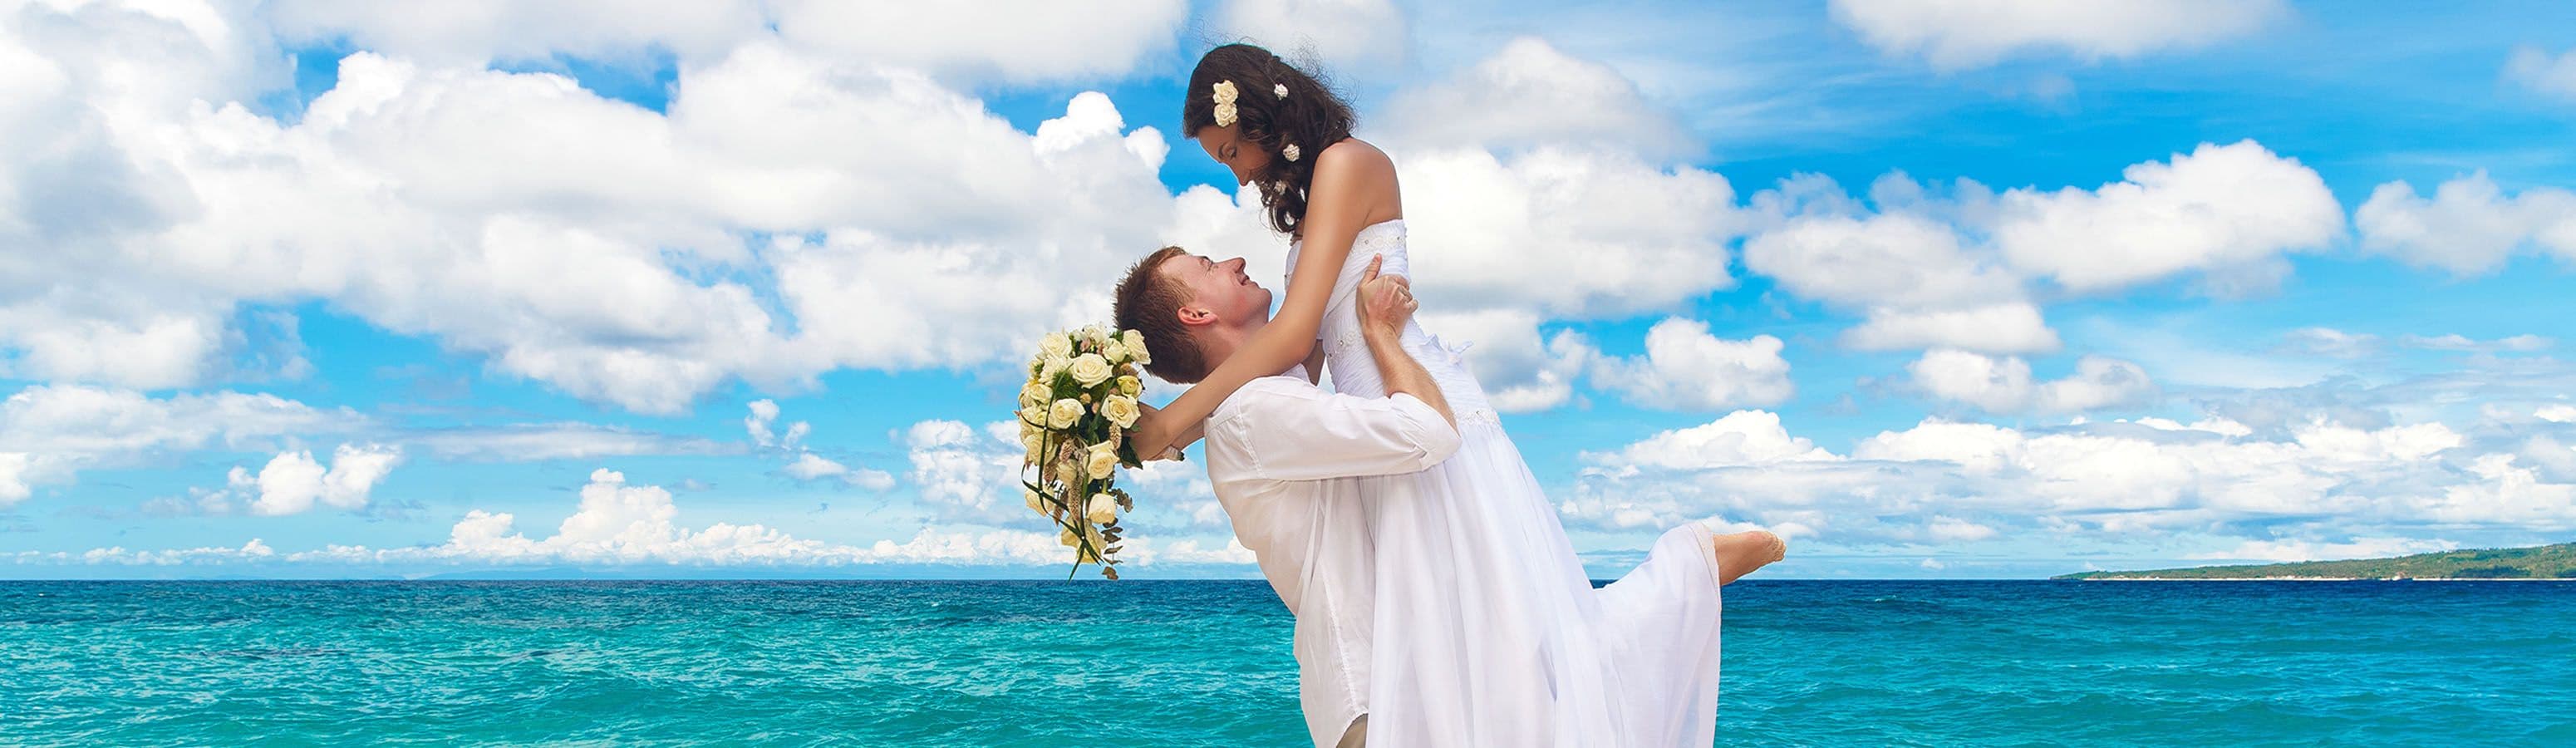 Che ne dici di combinare una vacanza estiva con una cerimonia di matrimonio?